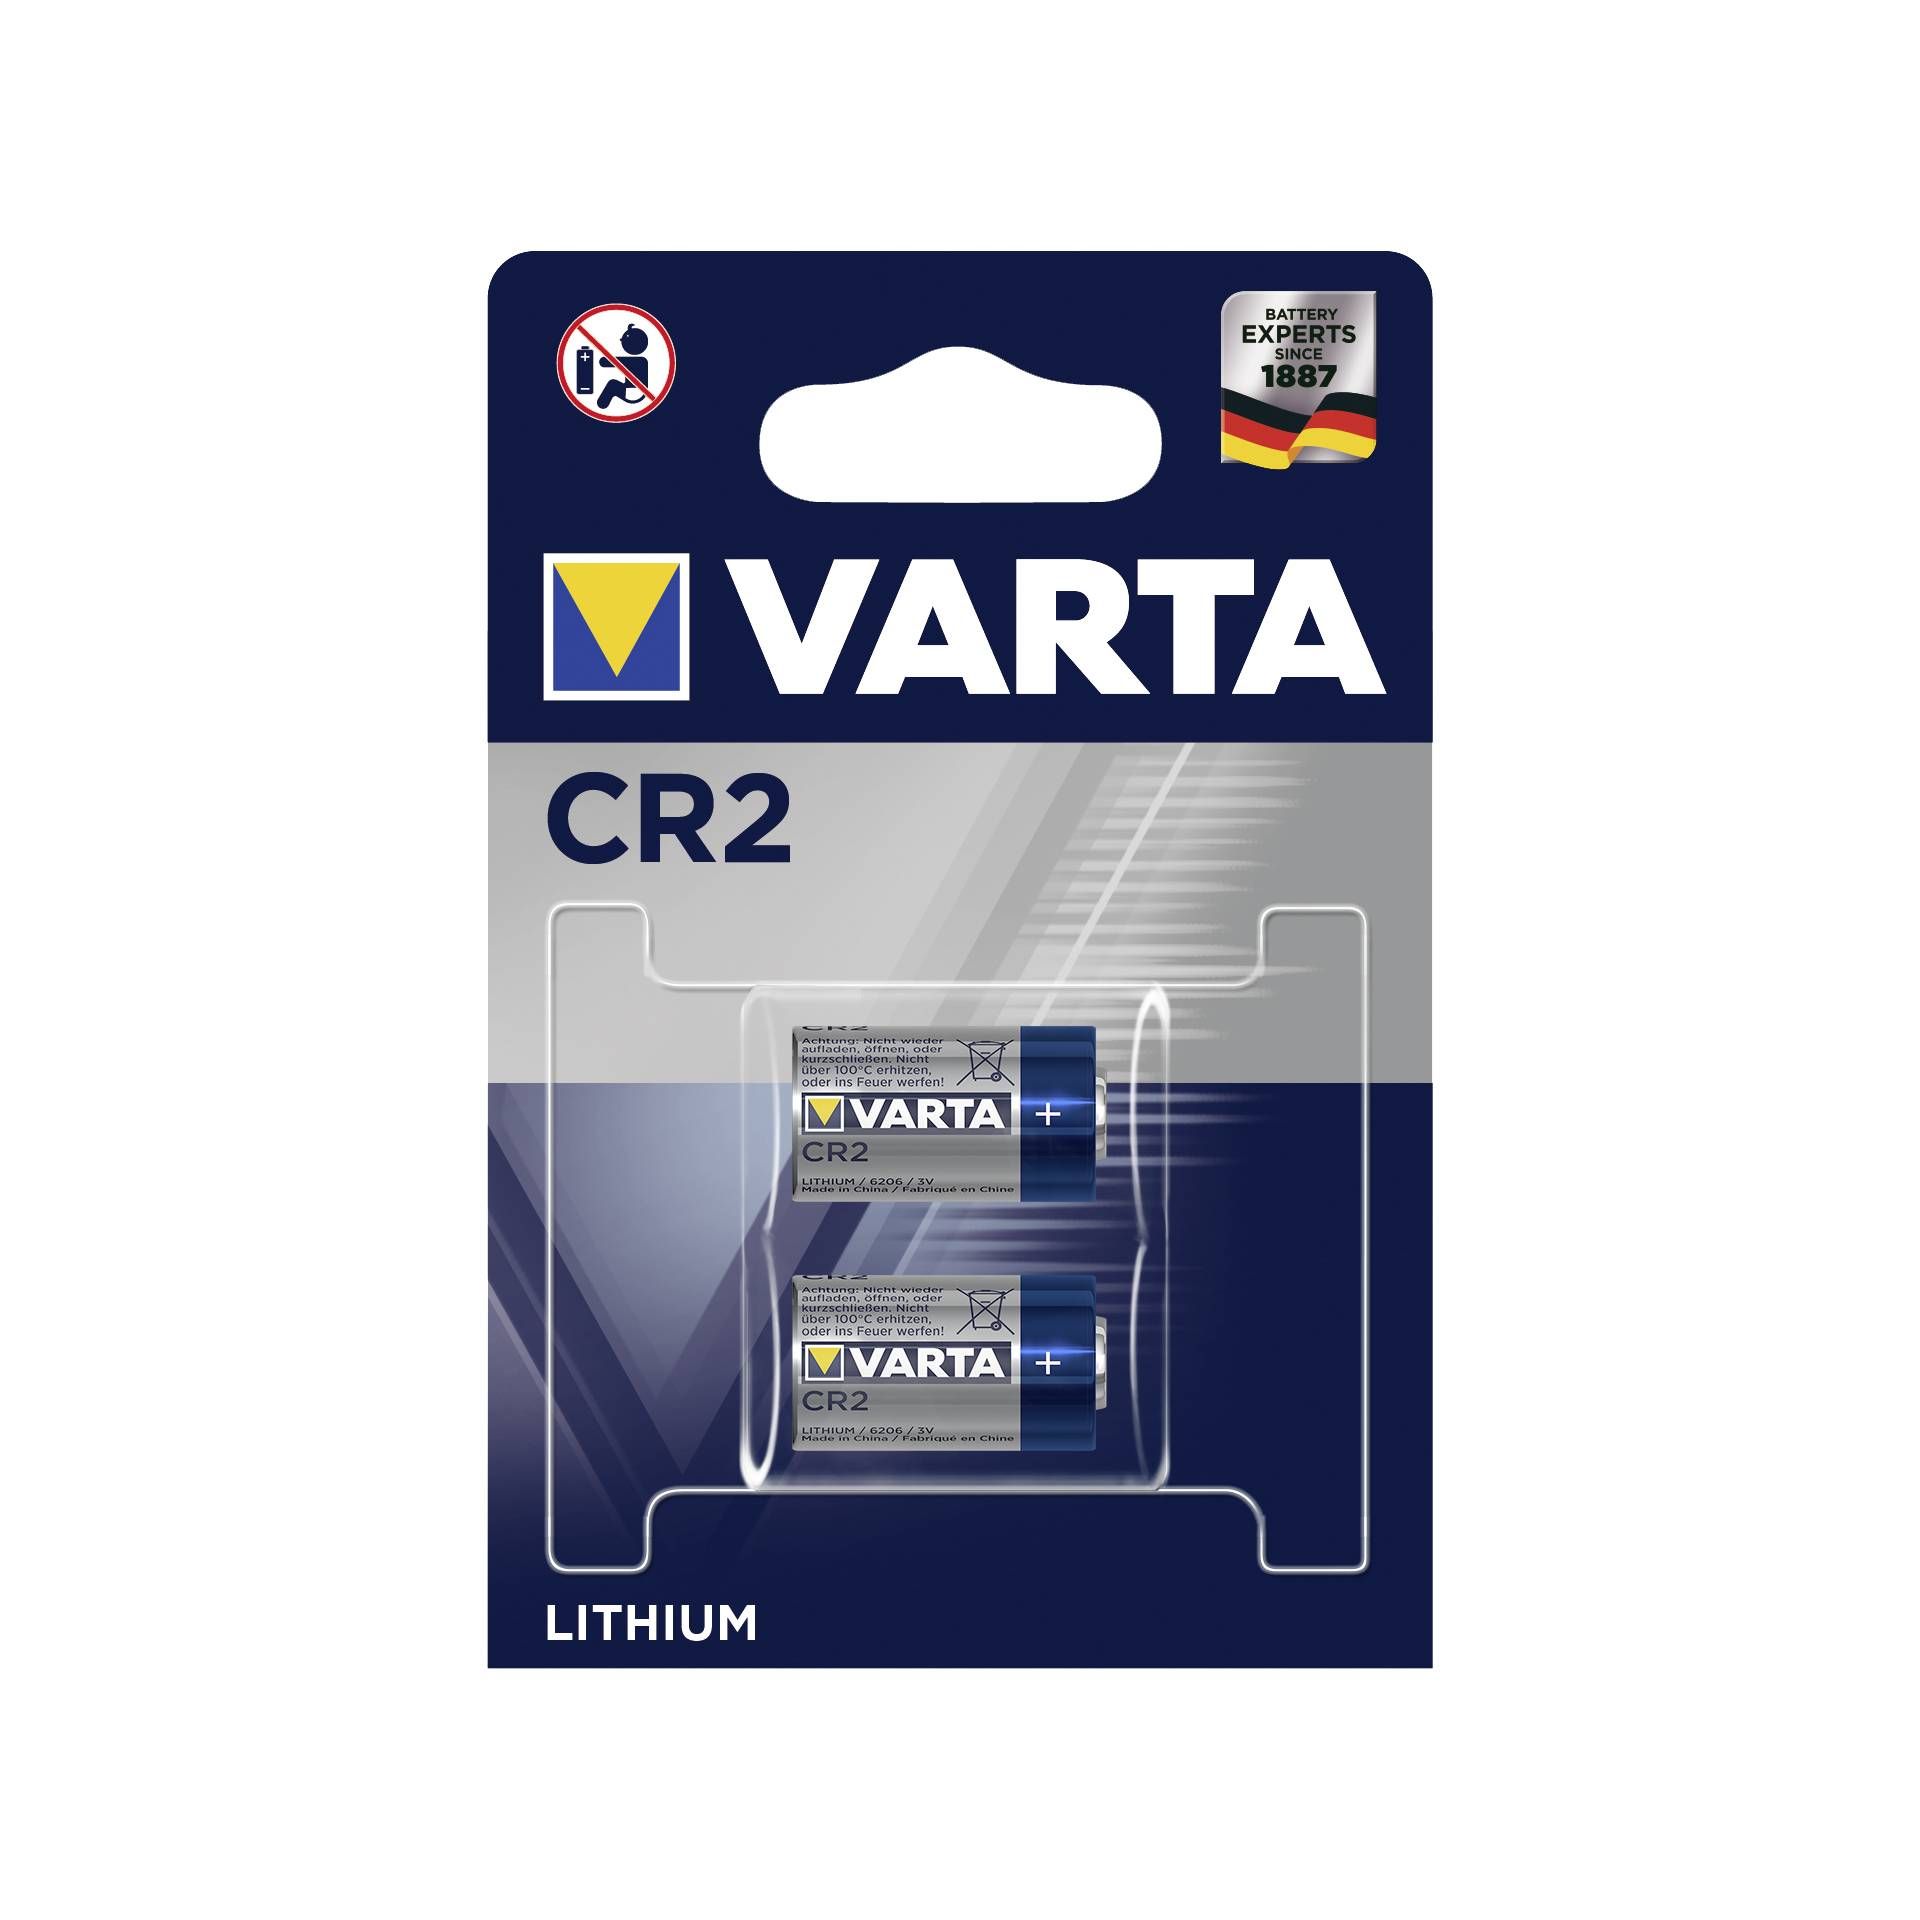 1x2 Varta Professional CR 2